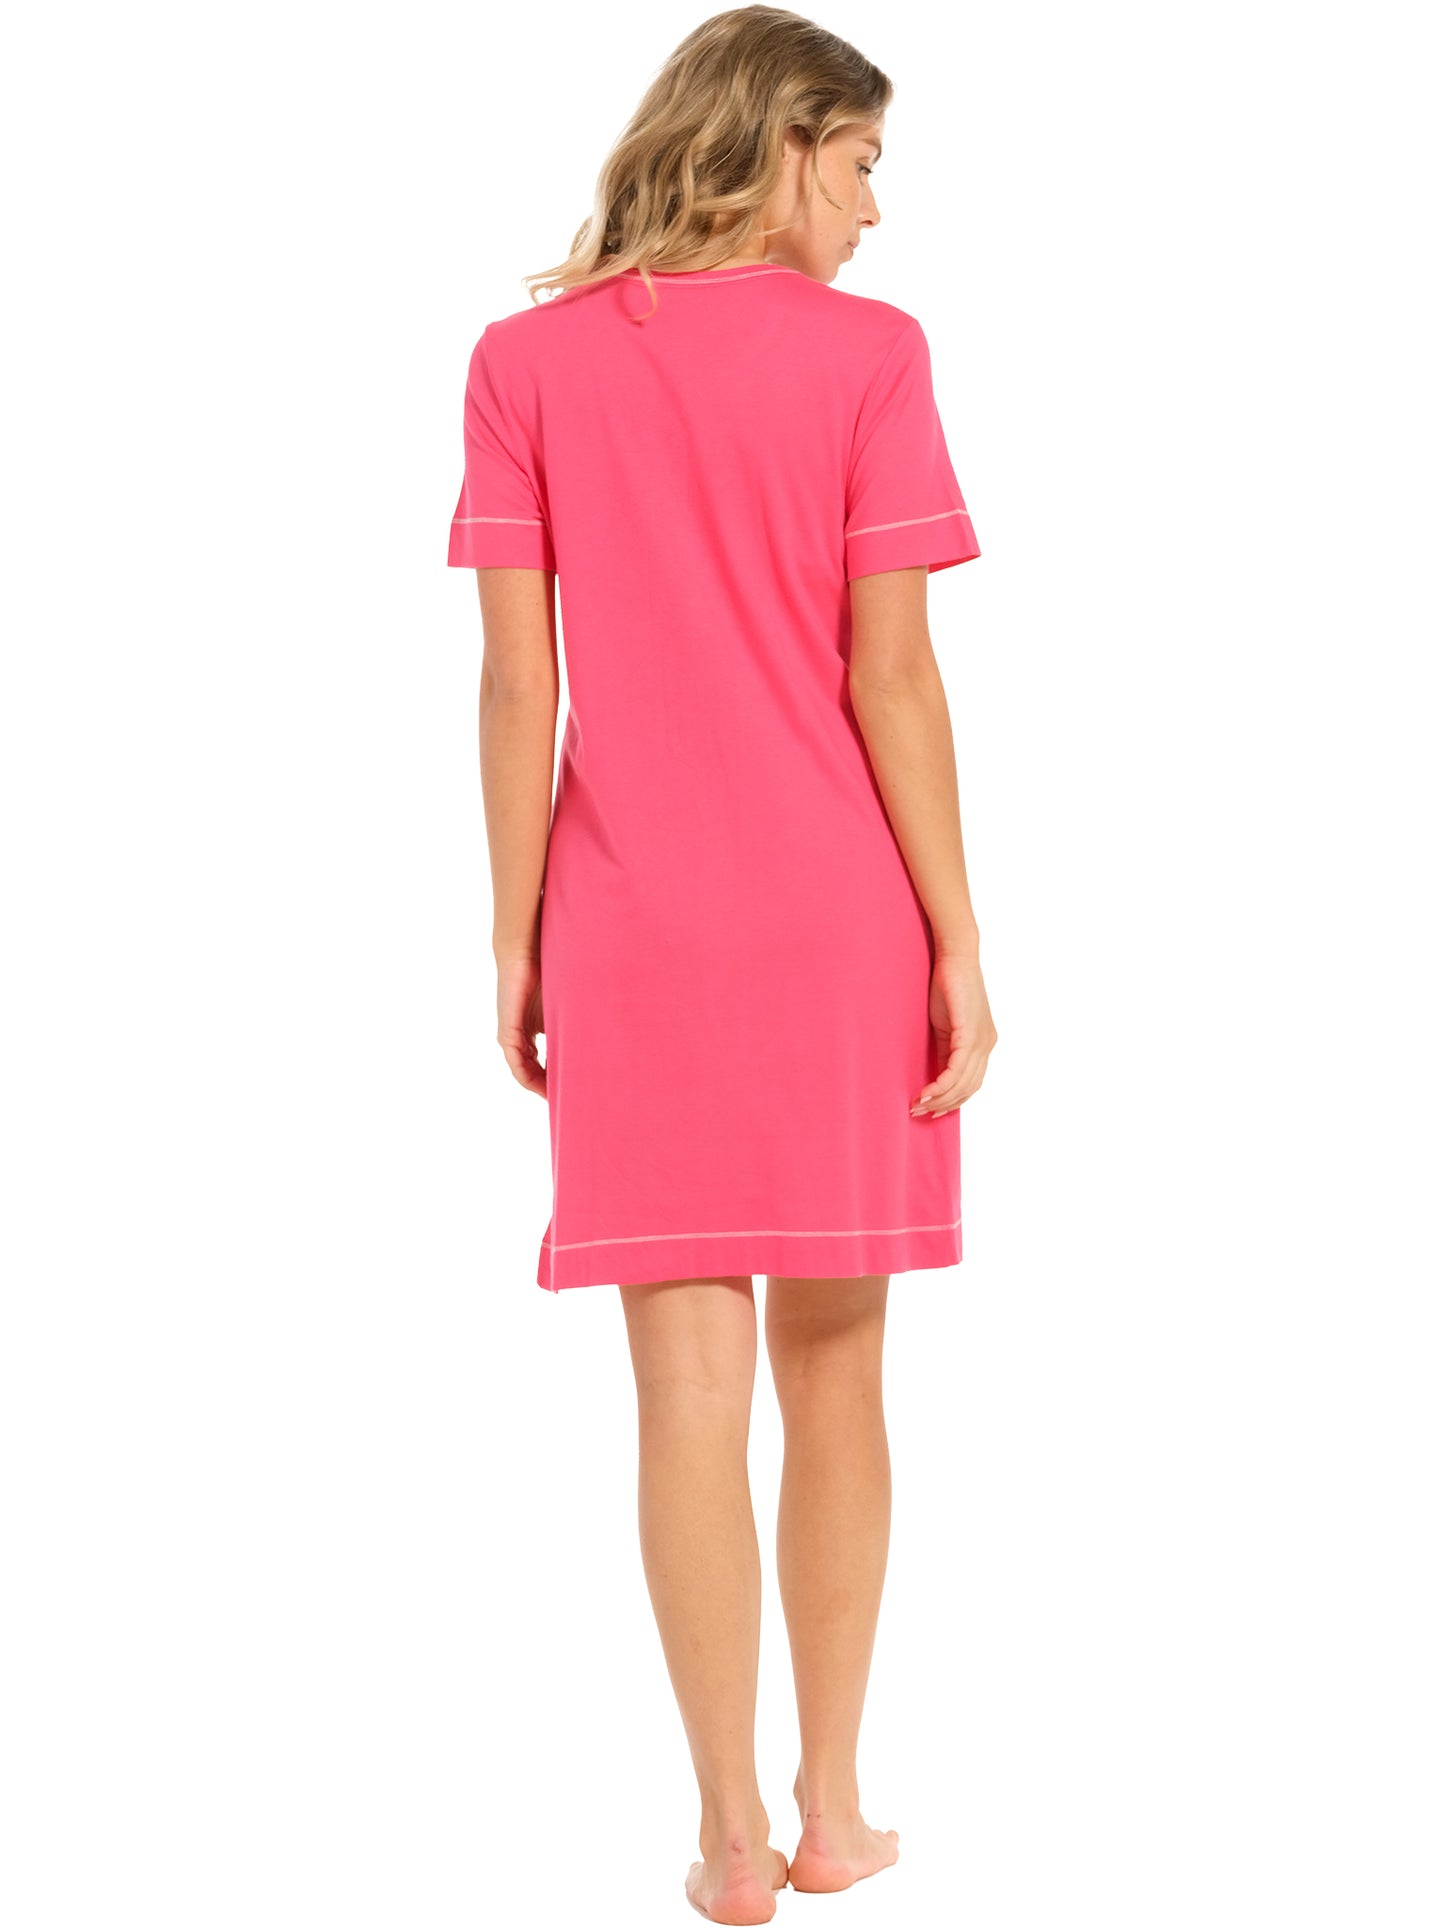 Nightdress 95cm 10241-100-3 213 pink